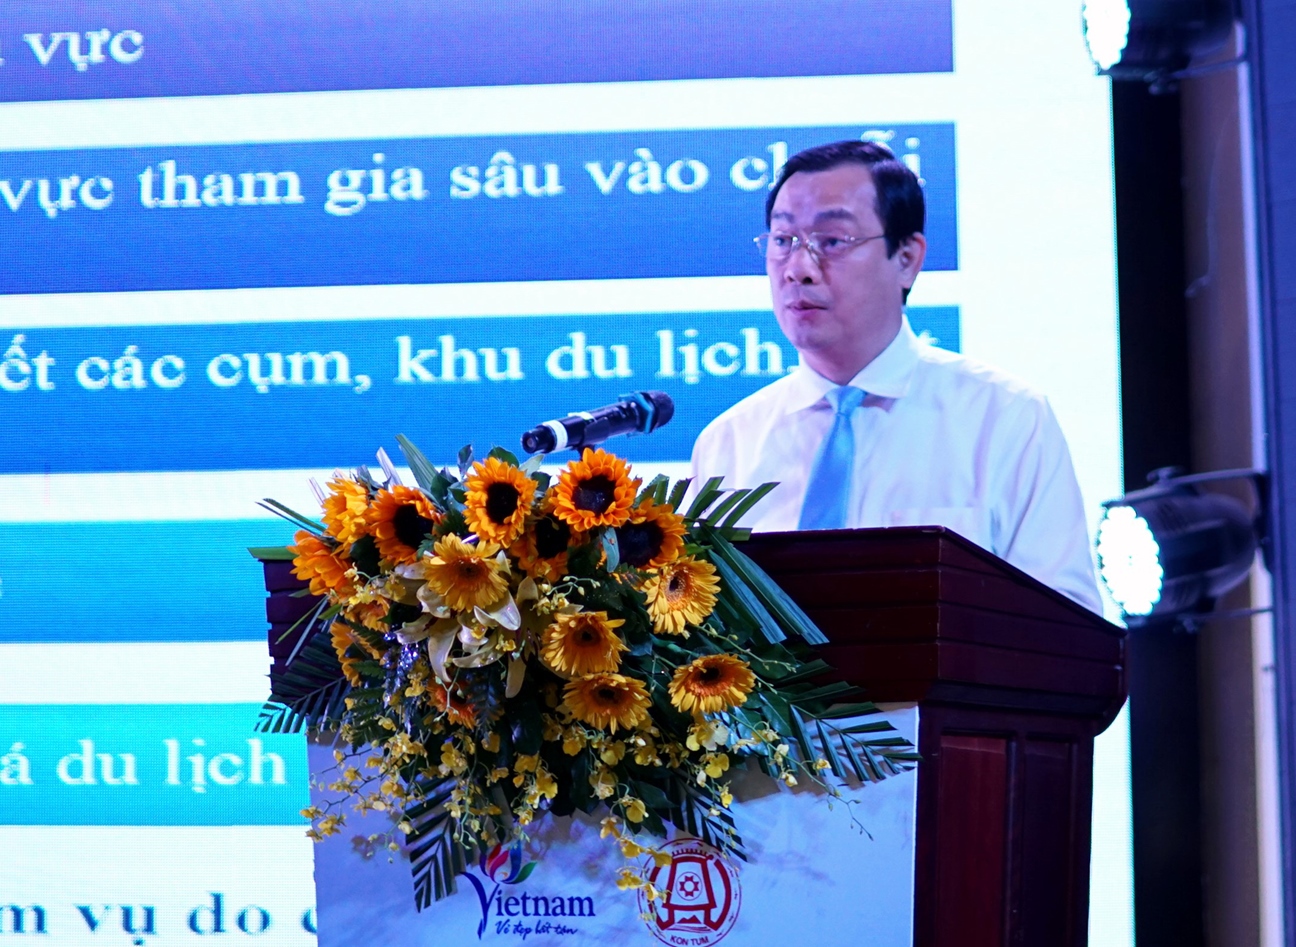 Trong khuôn khổ của Diễn đàn, Tổng cục Du lịch đã công bố Kế hoạch phát triển du lịch khu vực Tam giác phát triển Campuchia - Lào - Việt Nam giai đoạn 2021- 2025, tầm nhìn đến năm 2030